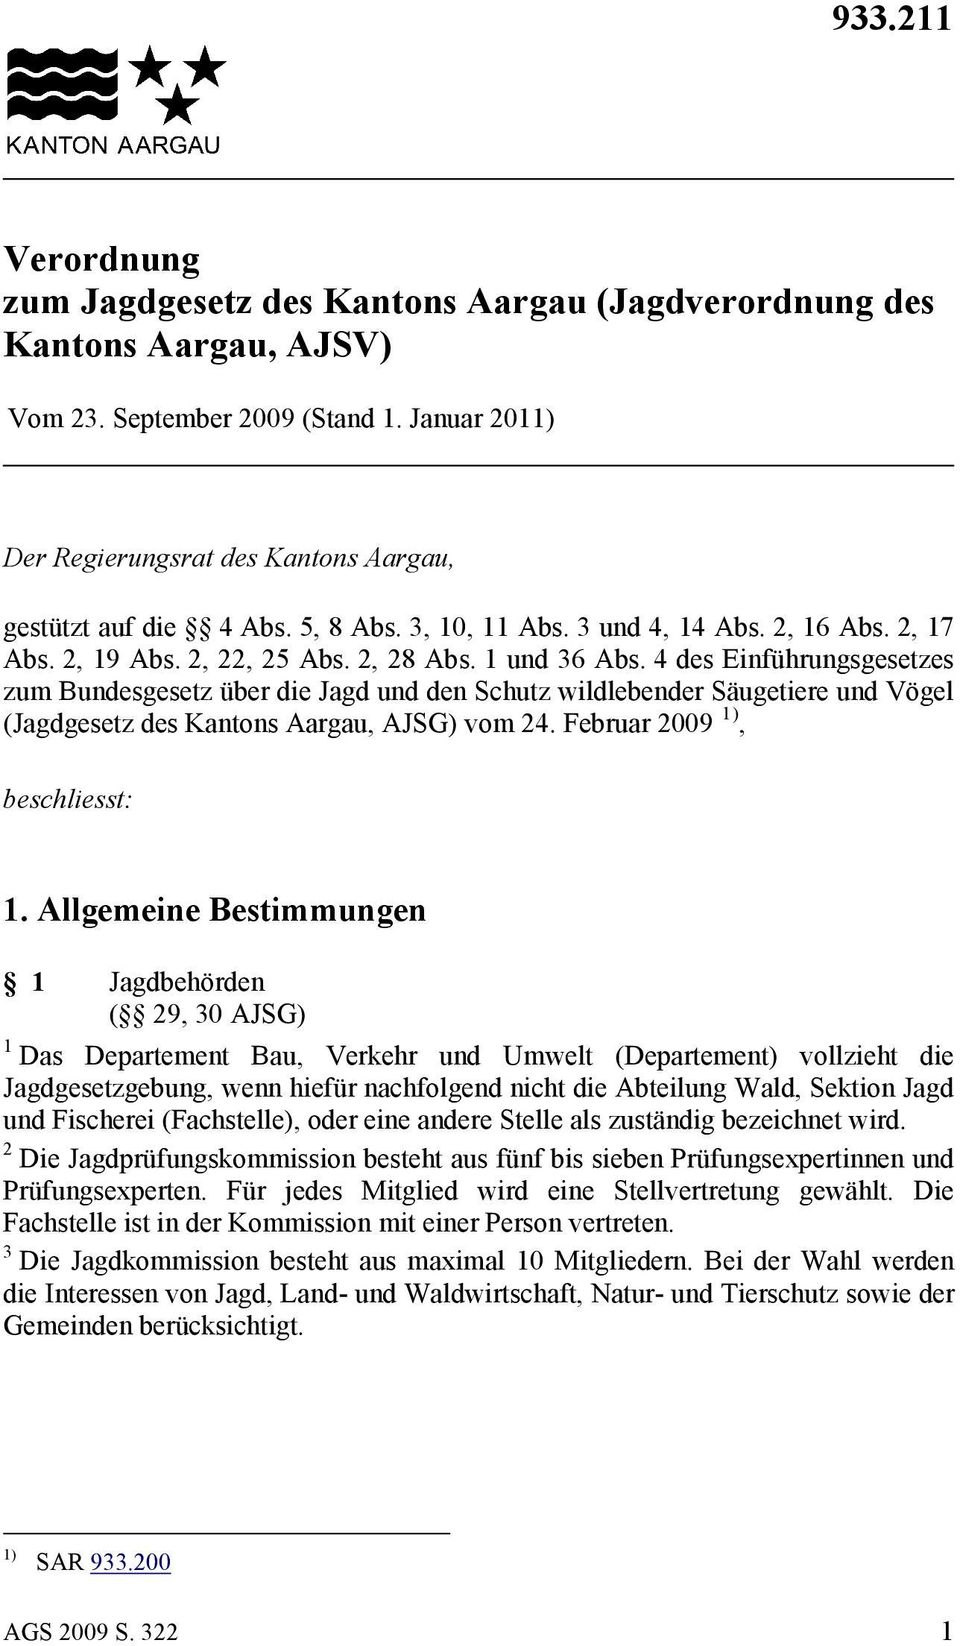 4 des Einführungsgesetzes zum Bundesgesetz über die Jagd und den Schutz wildlebender Säugetiere und Vögel (Jagdgesetz des Kantons Aargau, AJSG) vom 24. Februar 2009 1), beschliesst: 1.